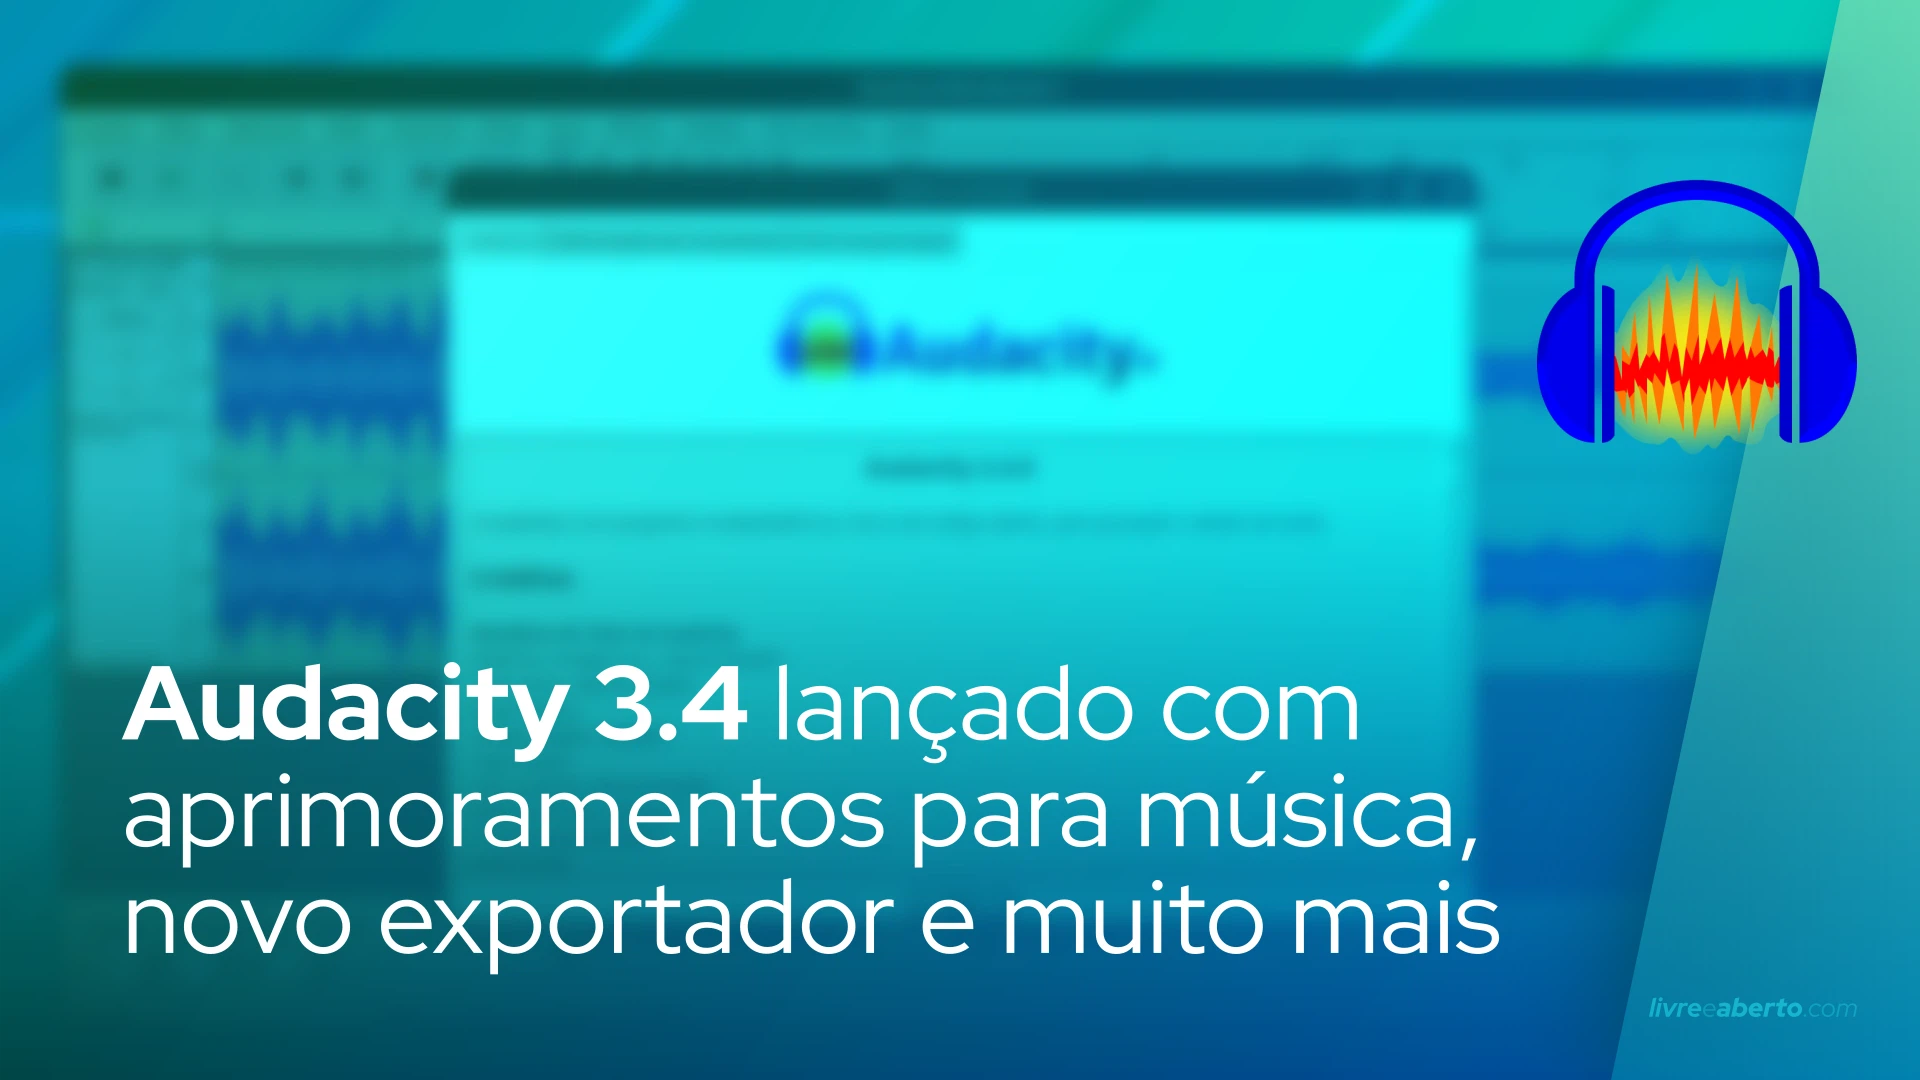 Audacity 3.4 lançado com aprimoramentos para música, novo exportador e muito mais